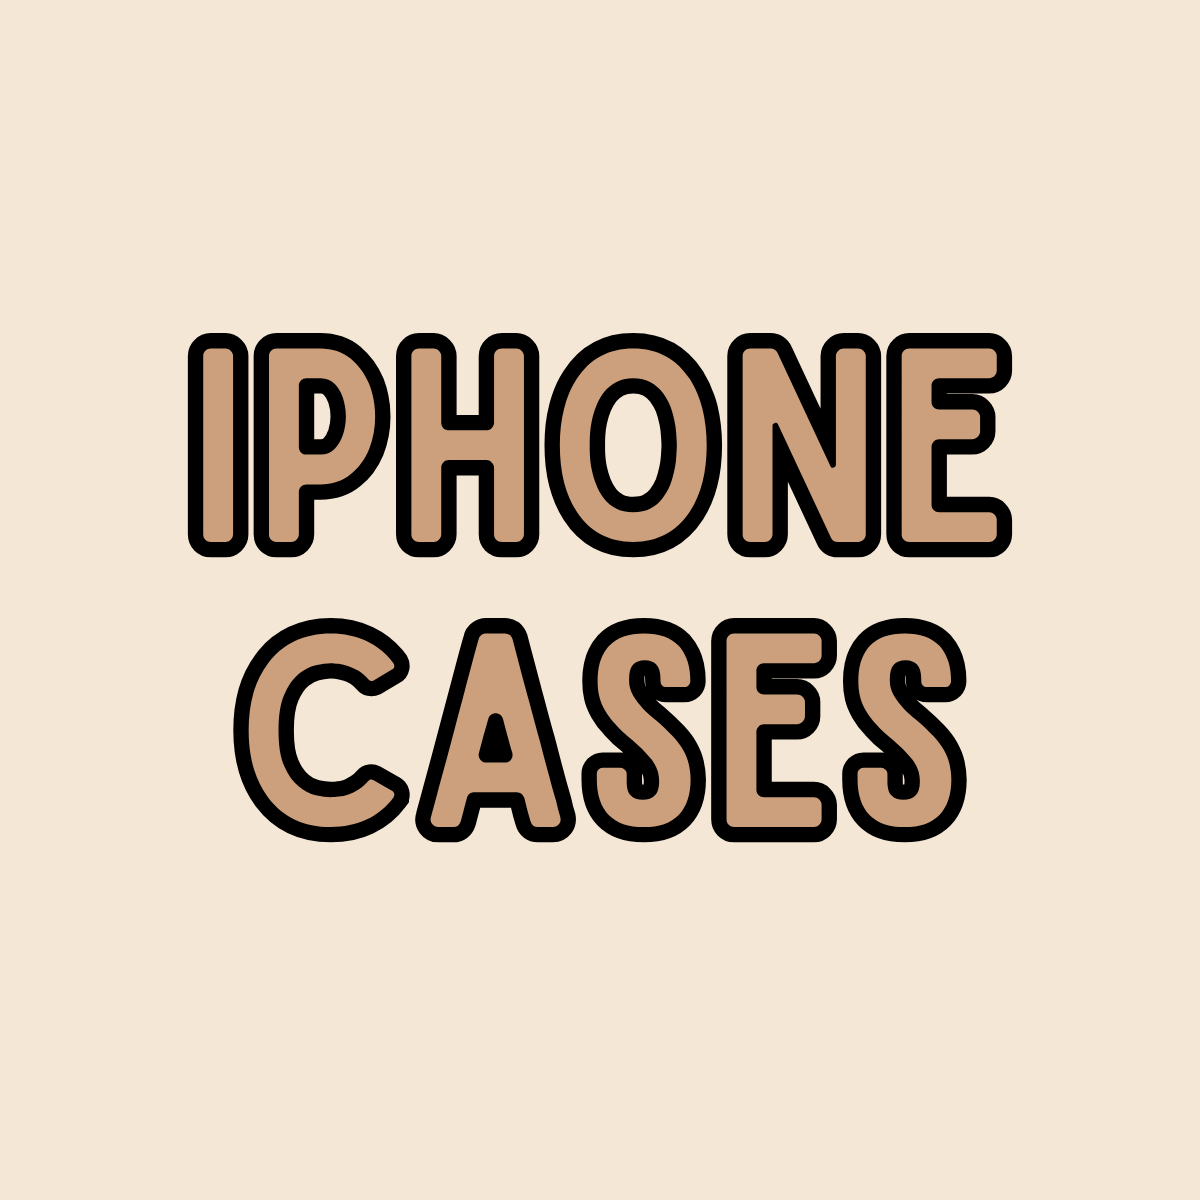 IPHONE CASES